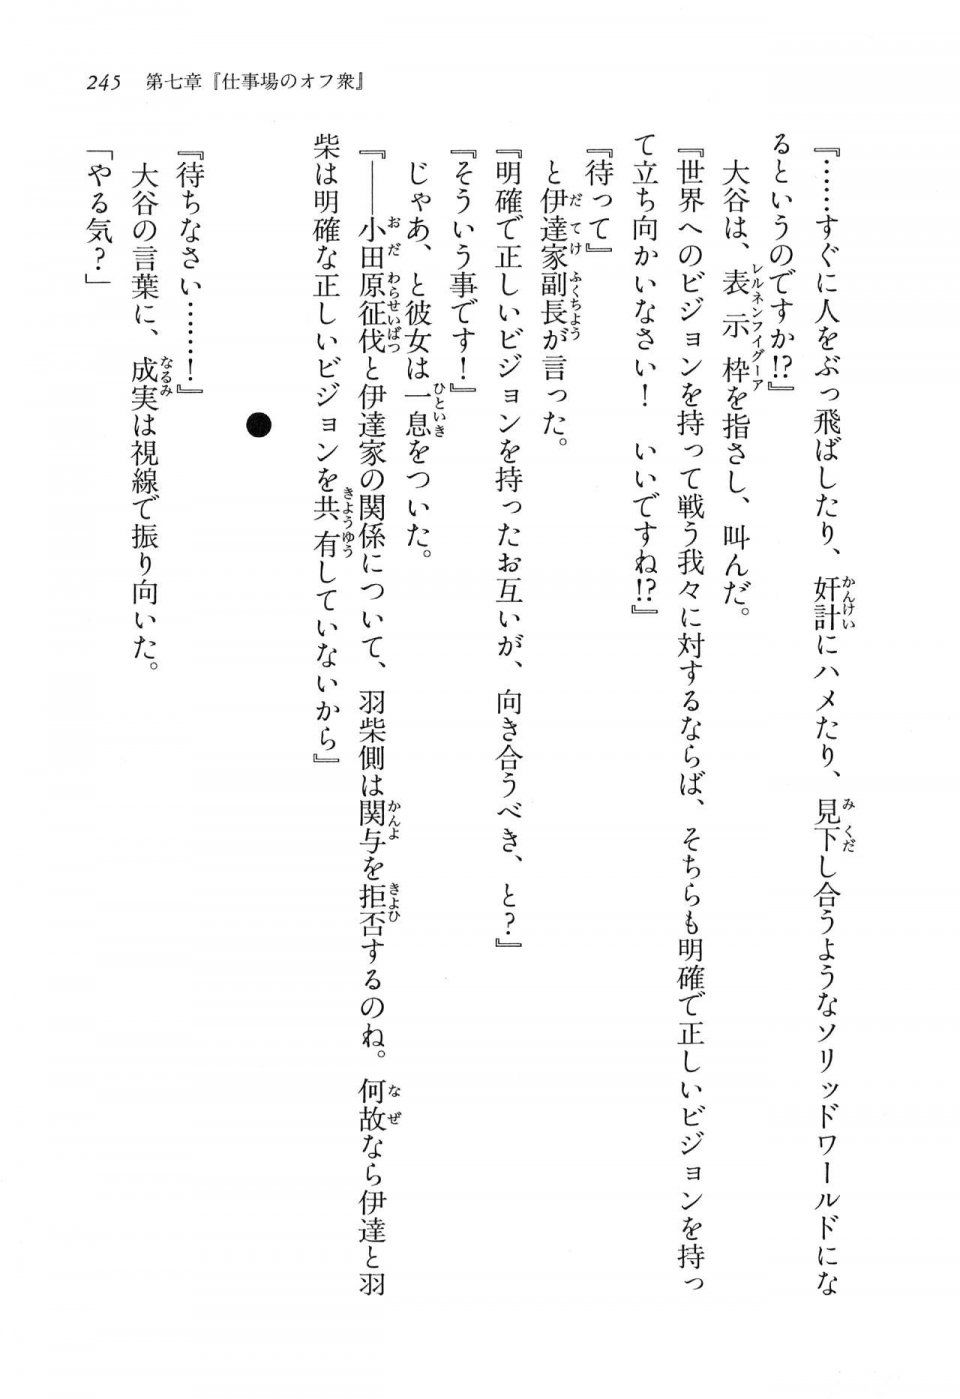 Kyoukai Senjou no Horizon LN Vol 16(7A) - Photo #245